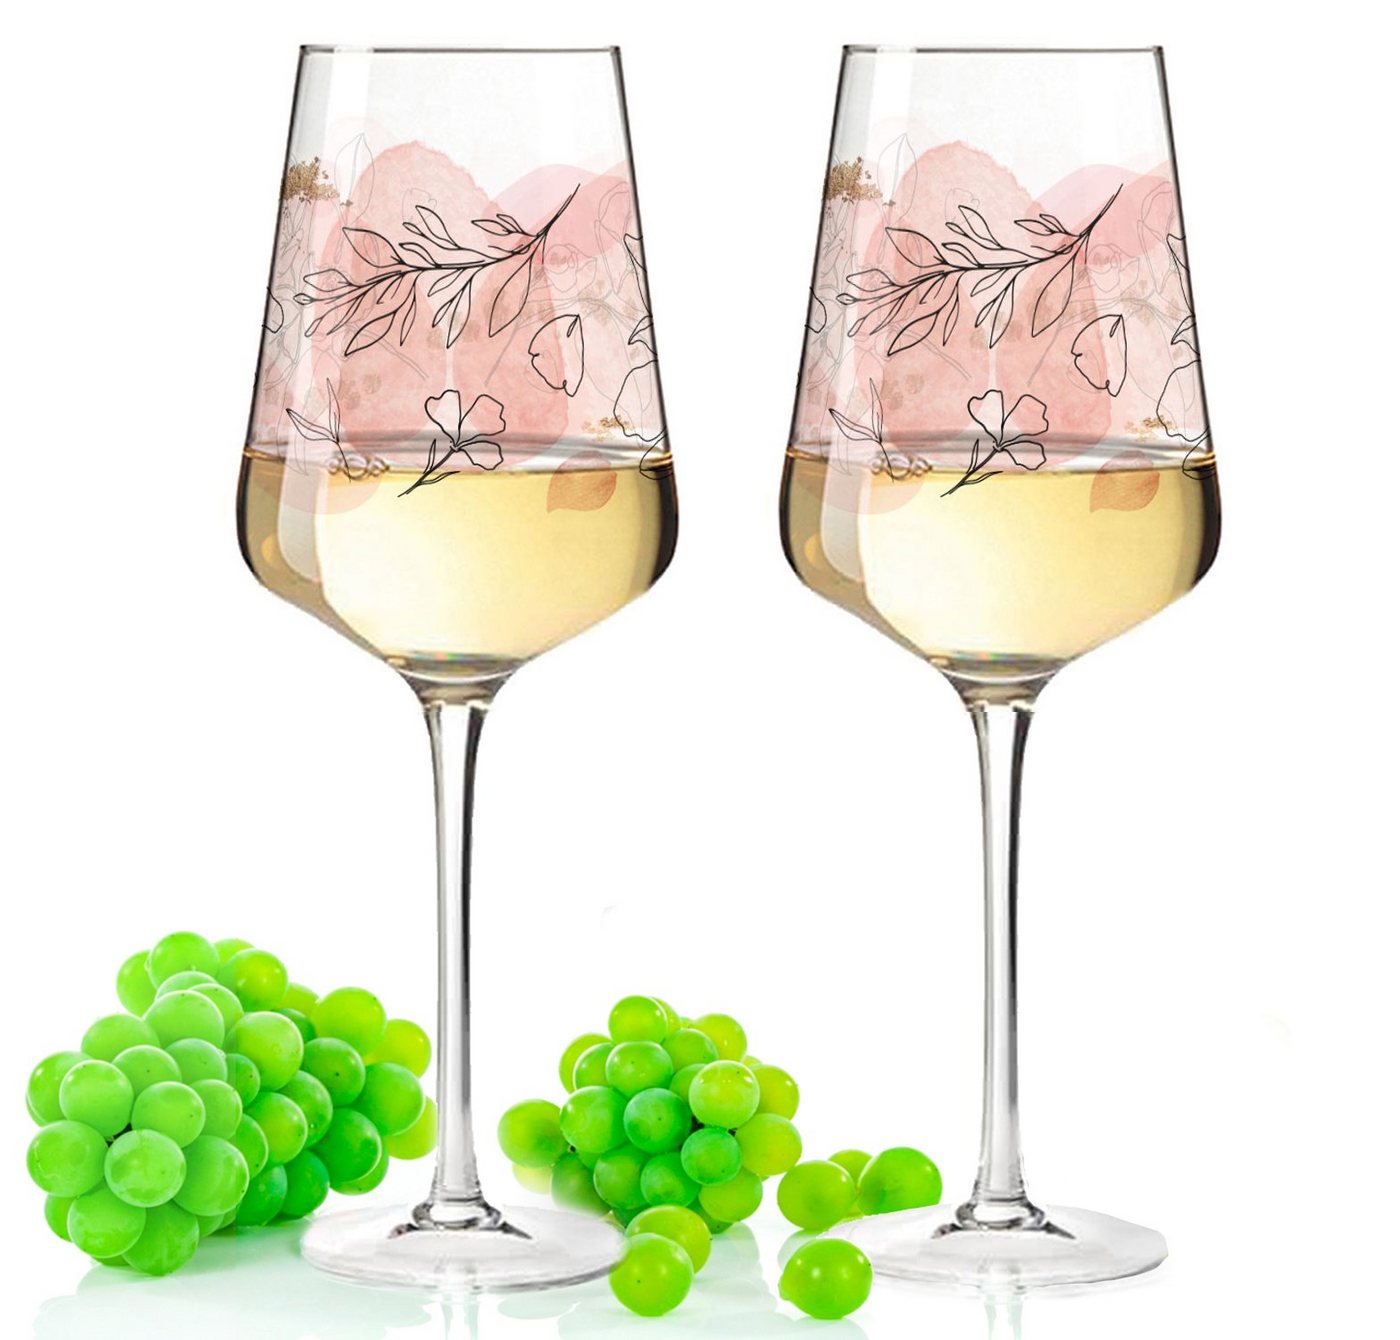 GRAVURZEILE Rotweinglas Leonardo Puccini Weingläser mit UV-Druck - Sommerblüten Design, Glas, Sommerliche Weingläser mit Blumen für Aperol, Weißwein und Rotwein von GRAVURZEILE